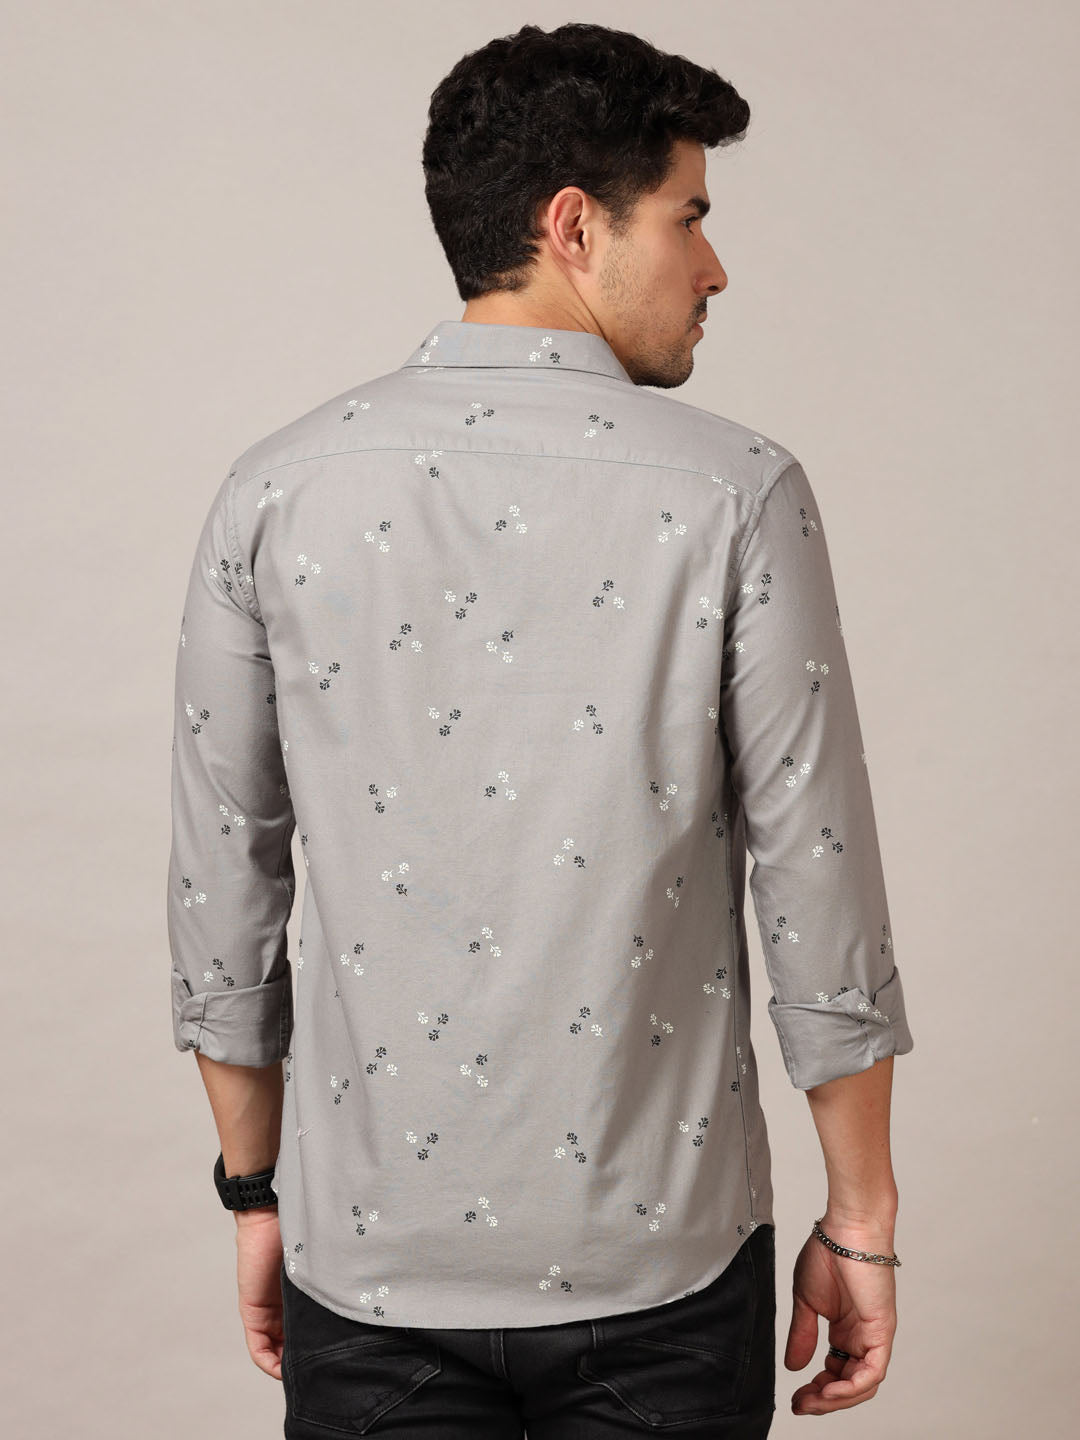 Grey  Printed Shirt Printed Shirt Bushirt   